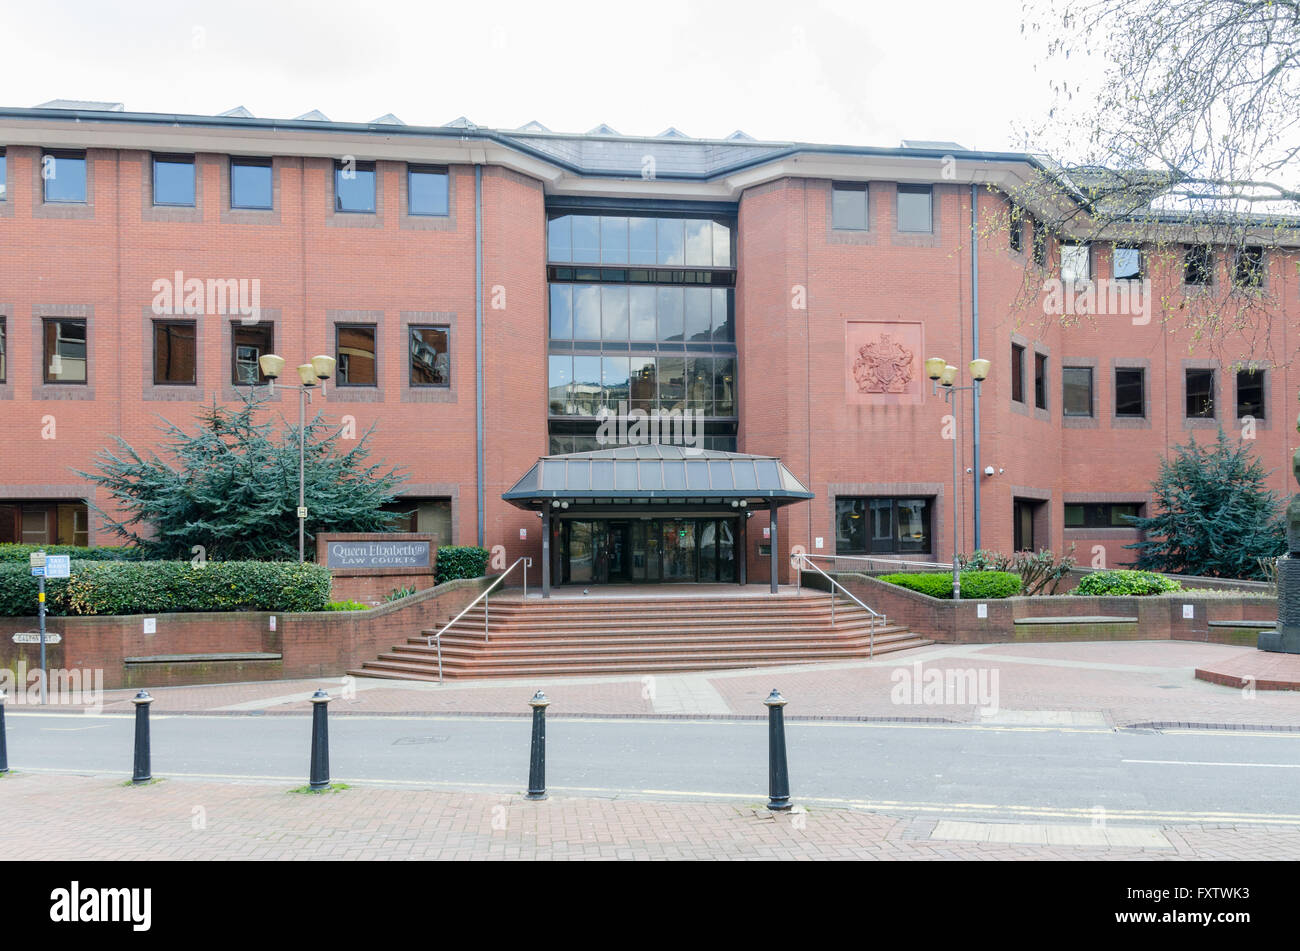 Queen Elizabeth Law Courts in Birmingham Stock Photo